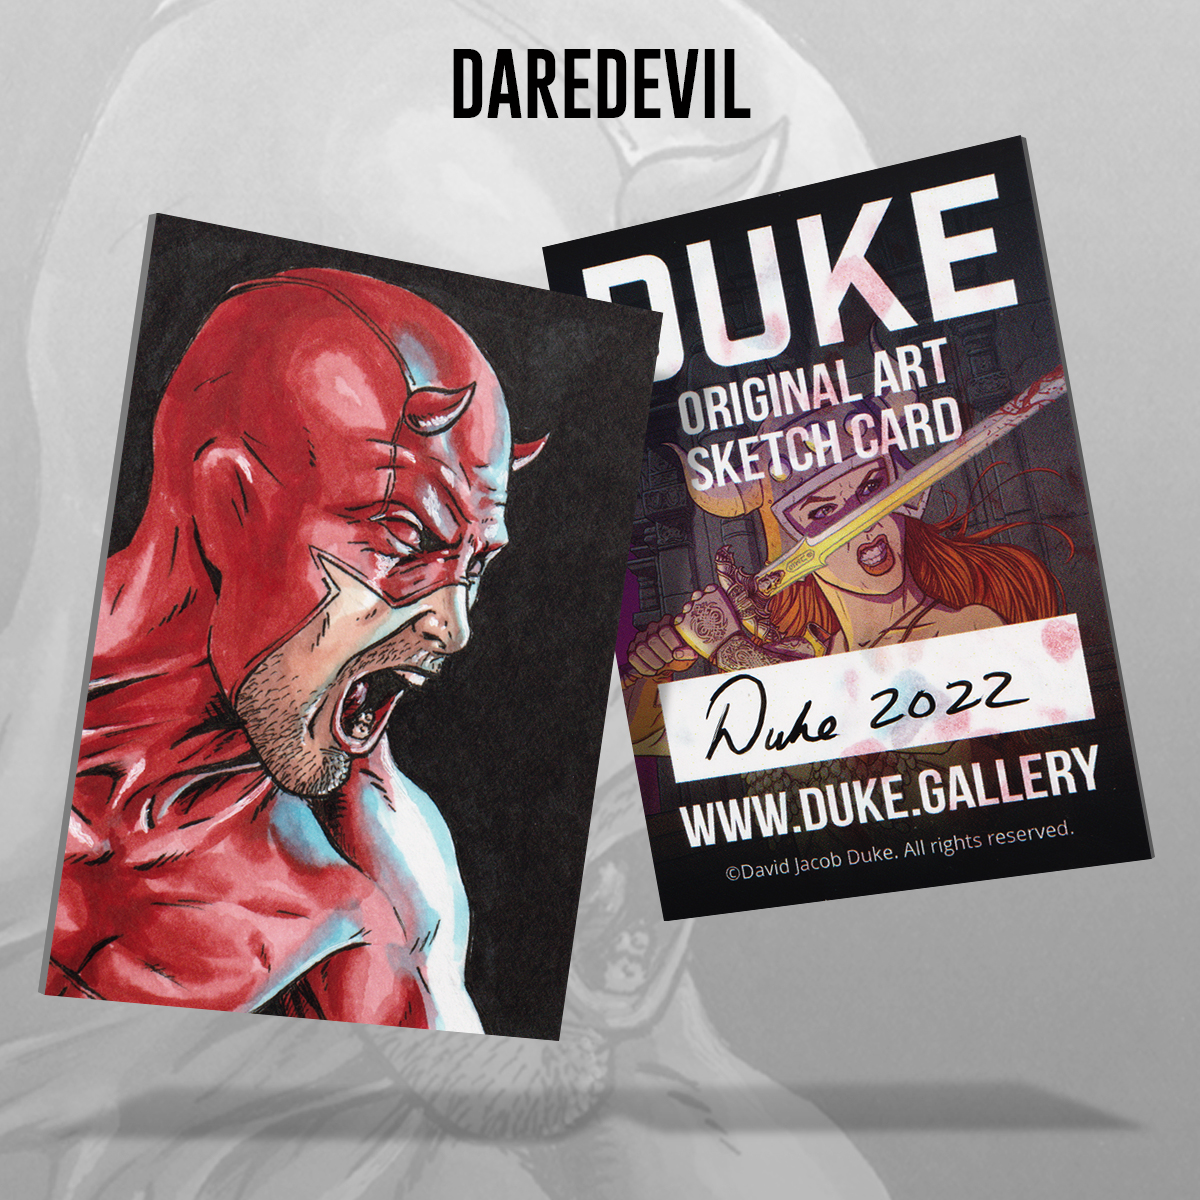 Daredevil Sketch Card by Duke